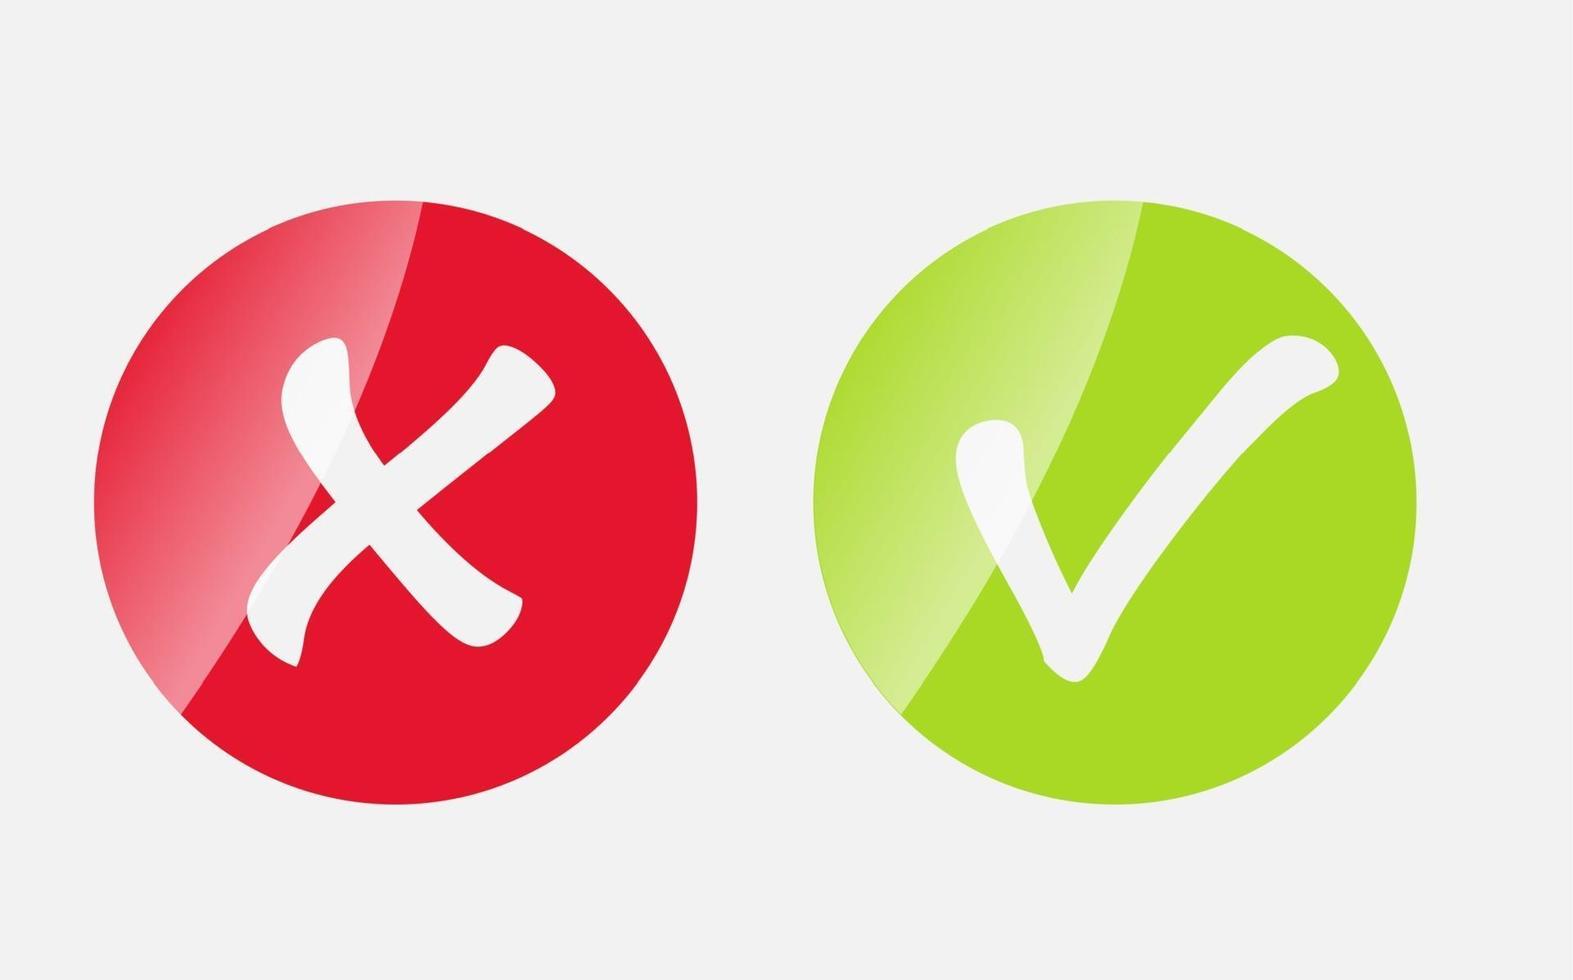 icone vettoriali con segno di spunta rosso e verde